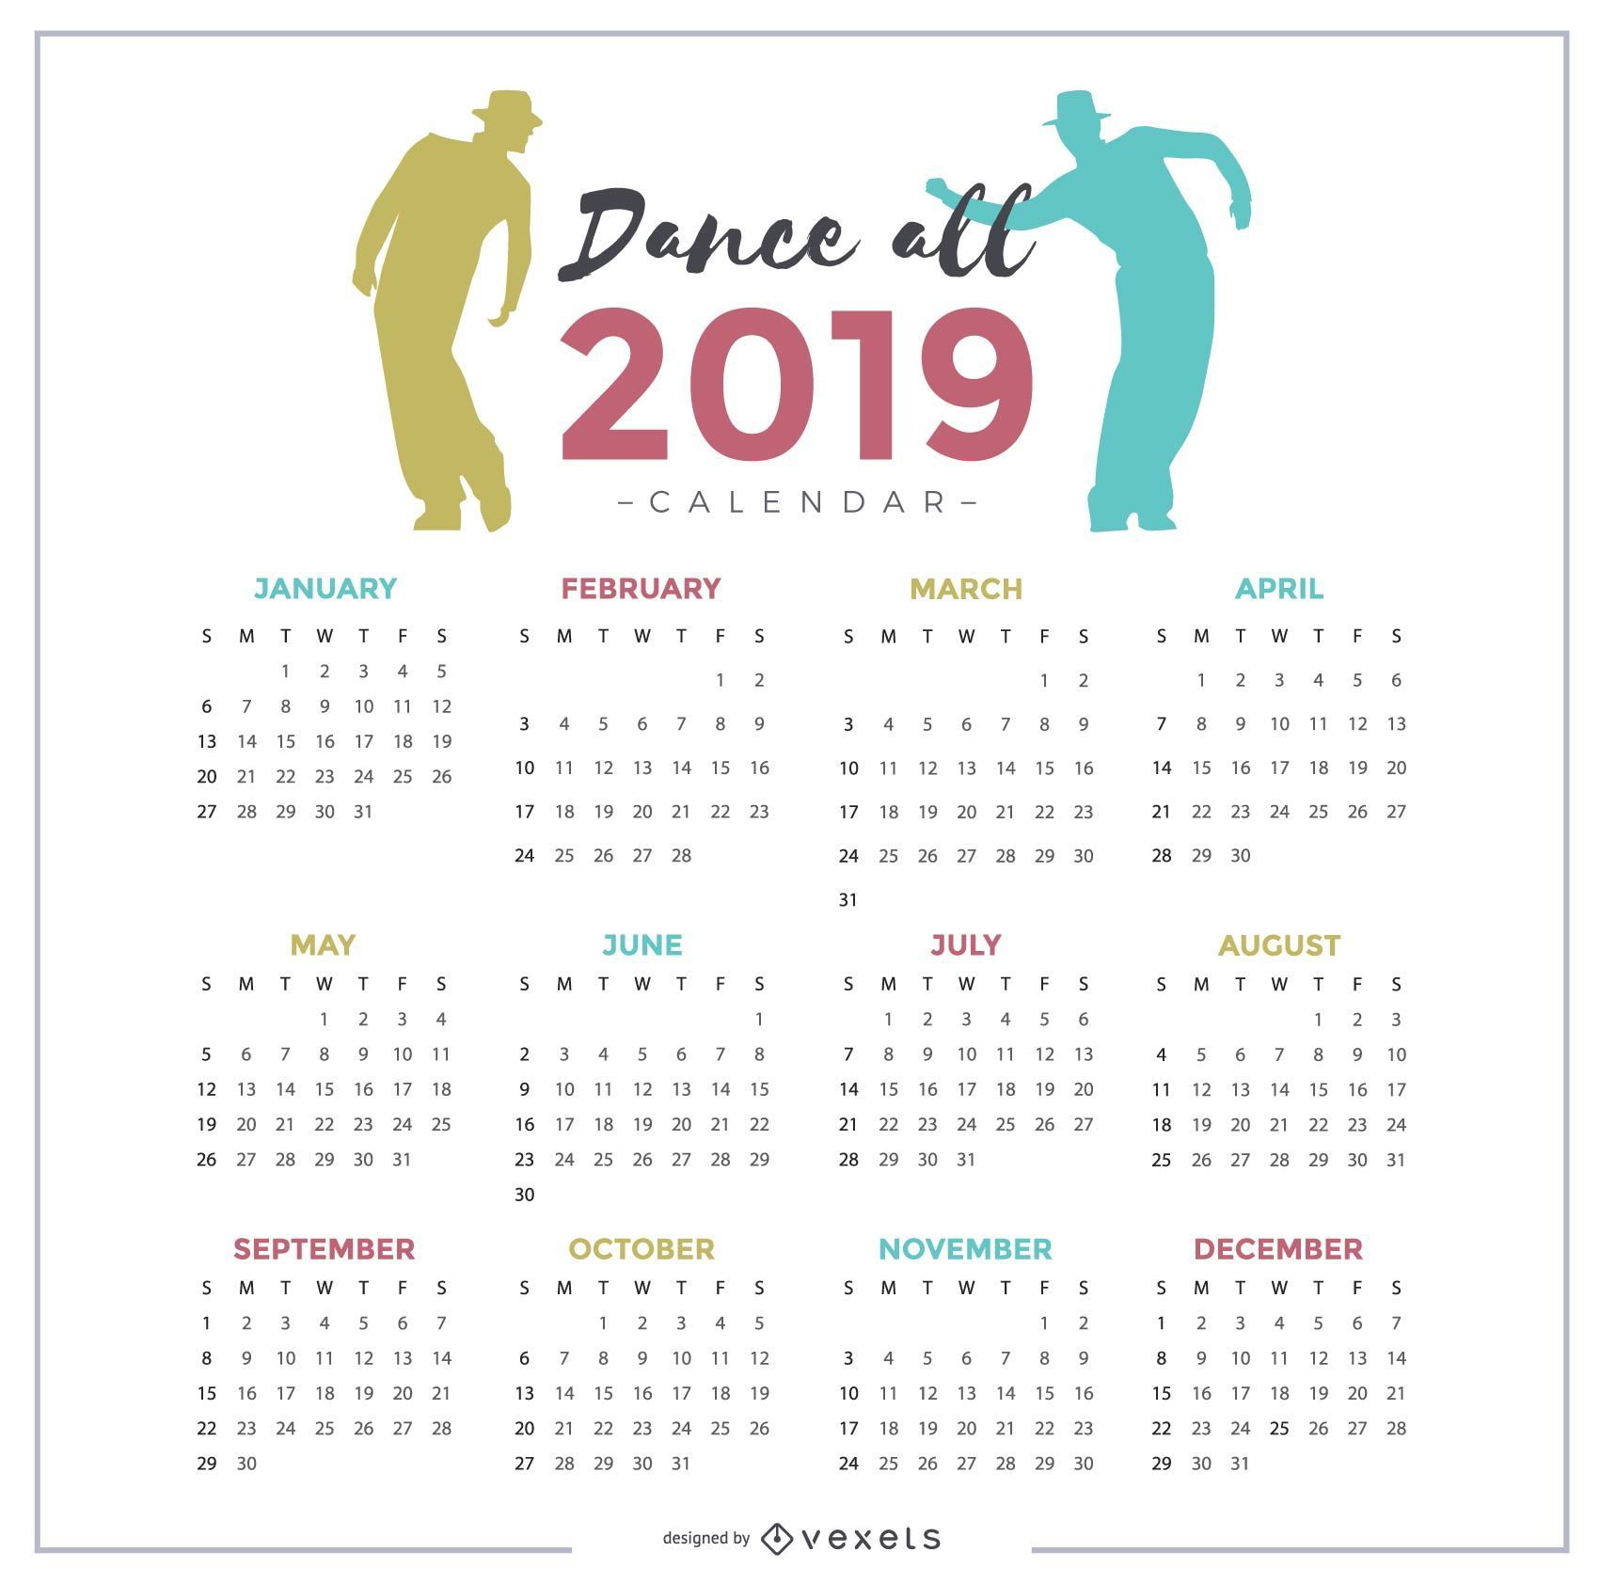 Diseño de calendario Dance All 2019